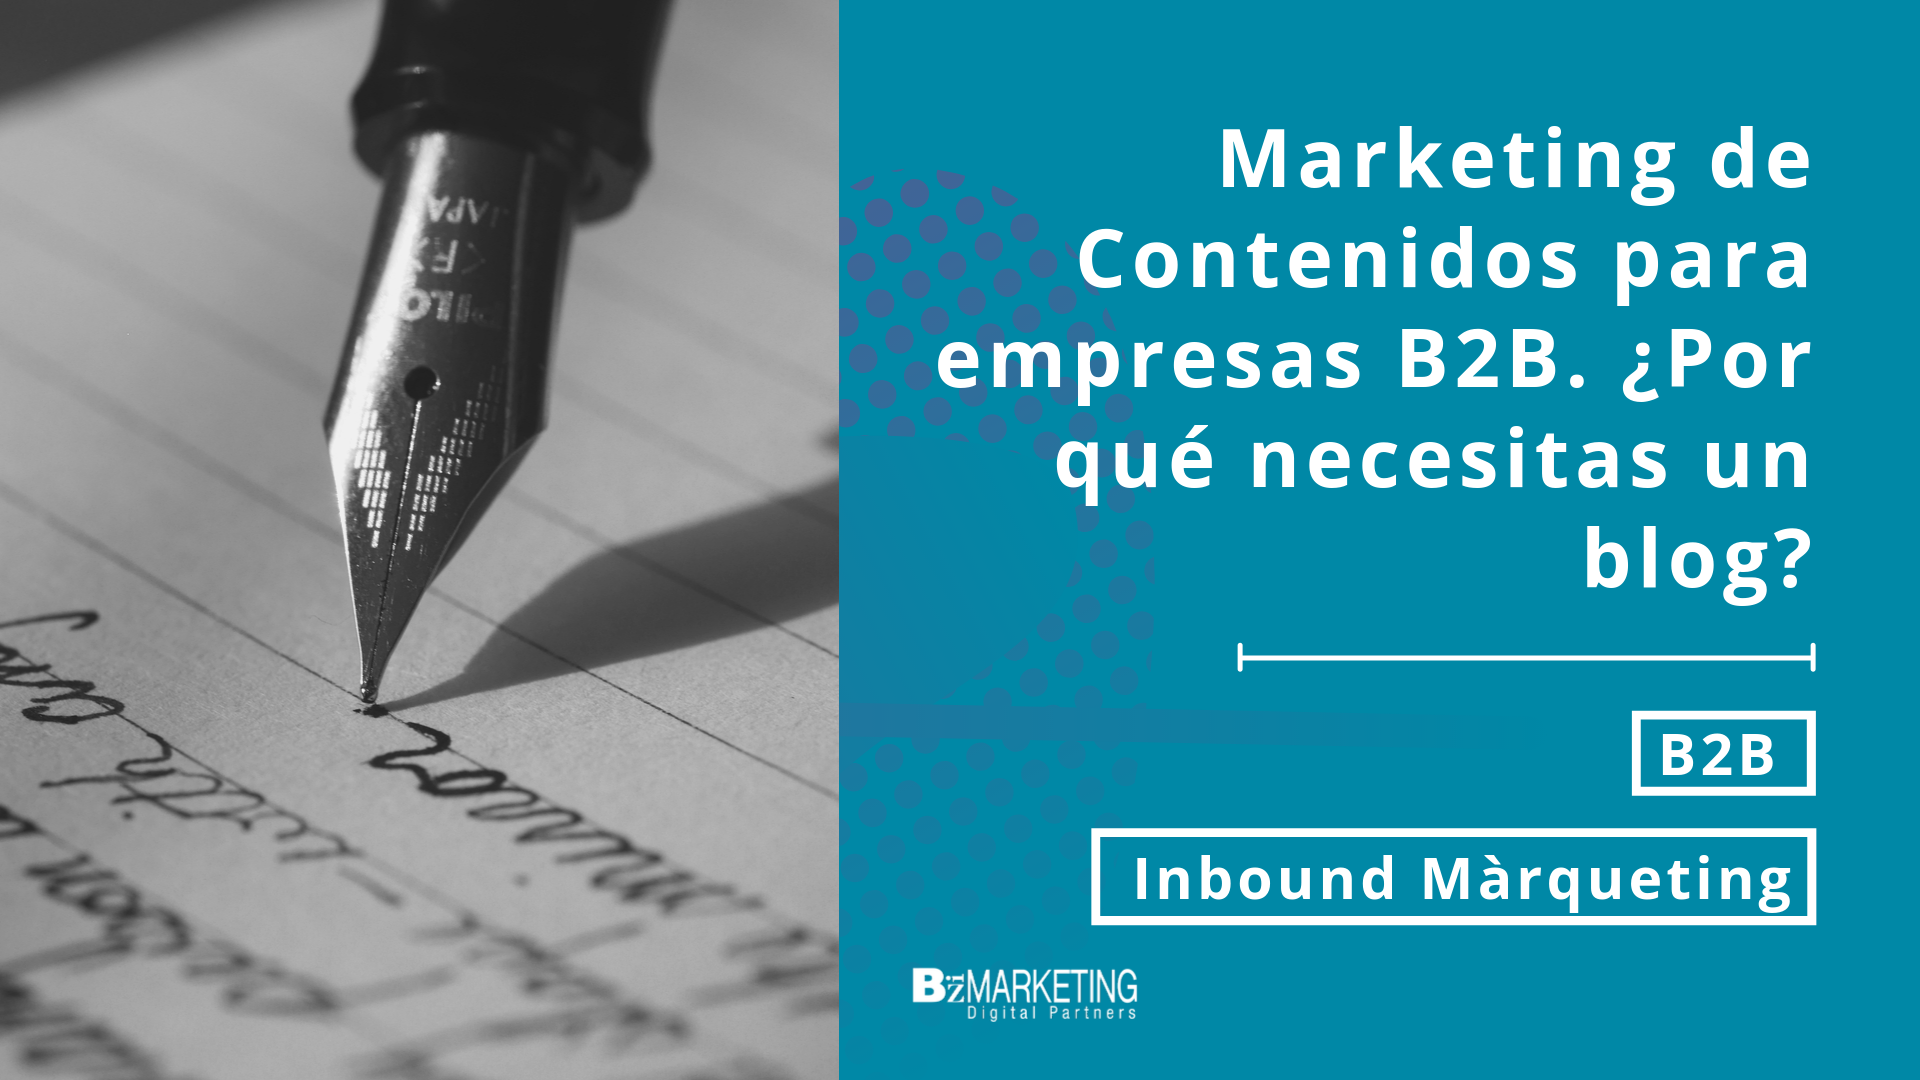 marketing-de-contenidos-para-empresas-b2b-por-que-necesitas-un-blog-empresarial-inbound.marketing-bizmarketing